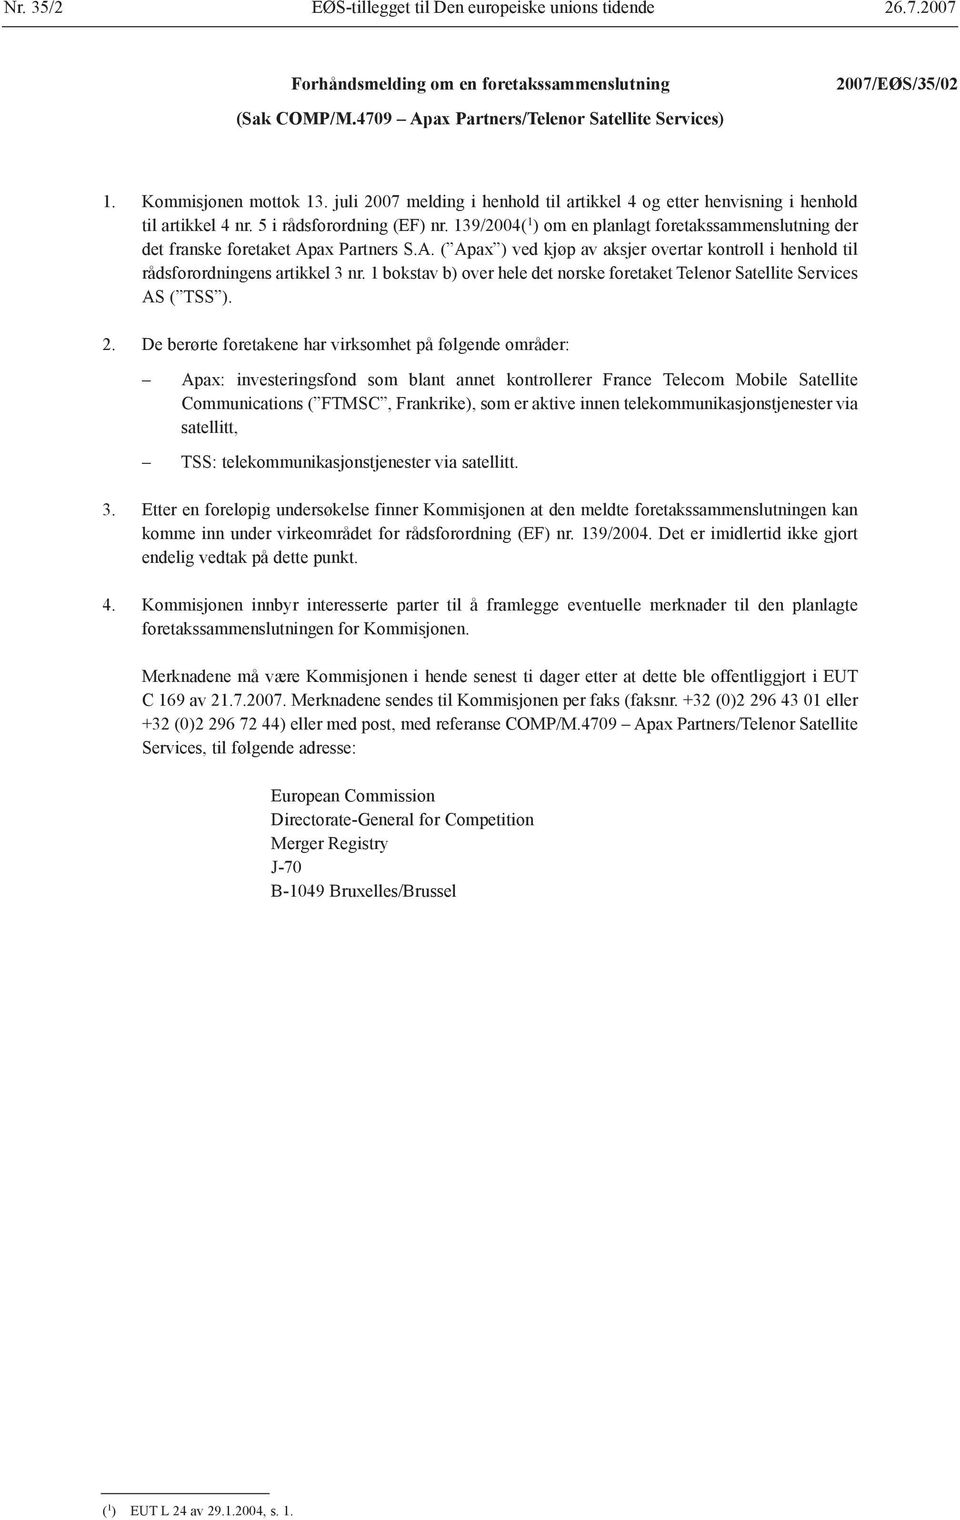 139/2004( 1 ) om en planlagt foretakssammenslutning der det franske foretaket Apax Partners S.A. ( Apax ) ved kjøp av aksjer overtar kontroll i henhold til rådsforordningens artikkel 3 nr.